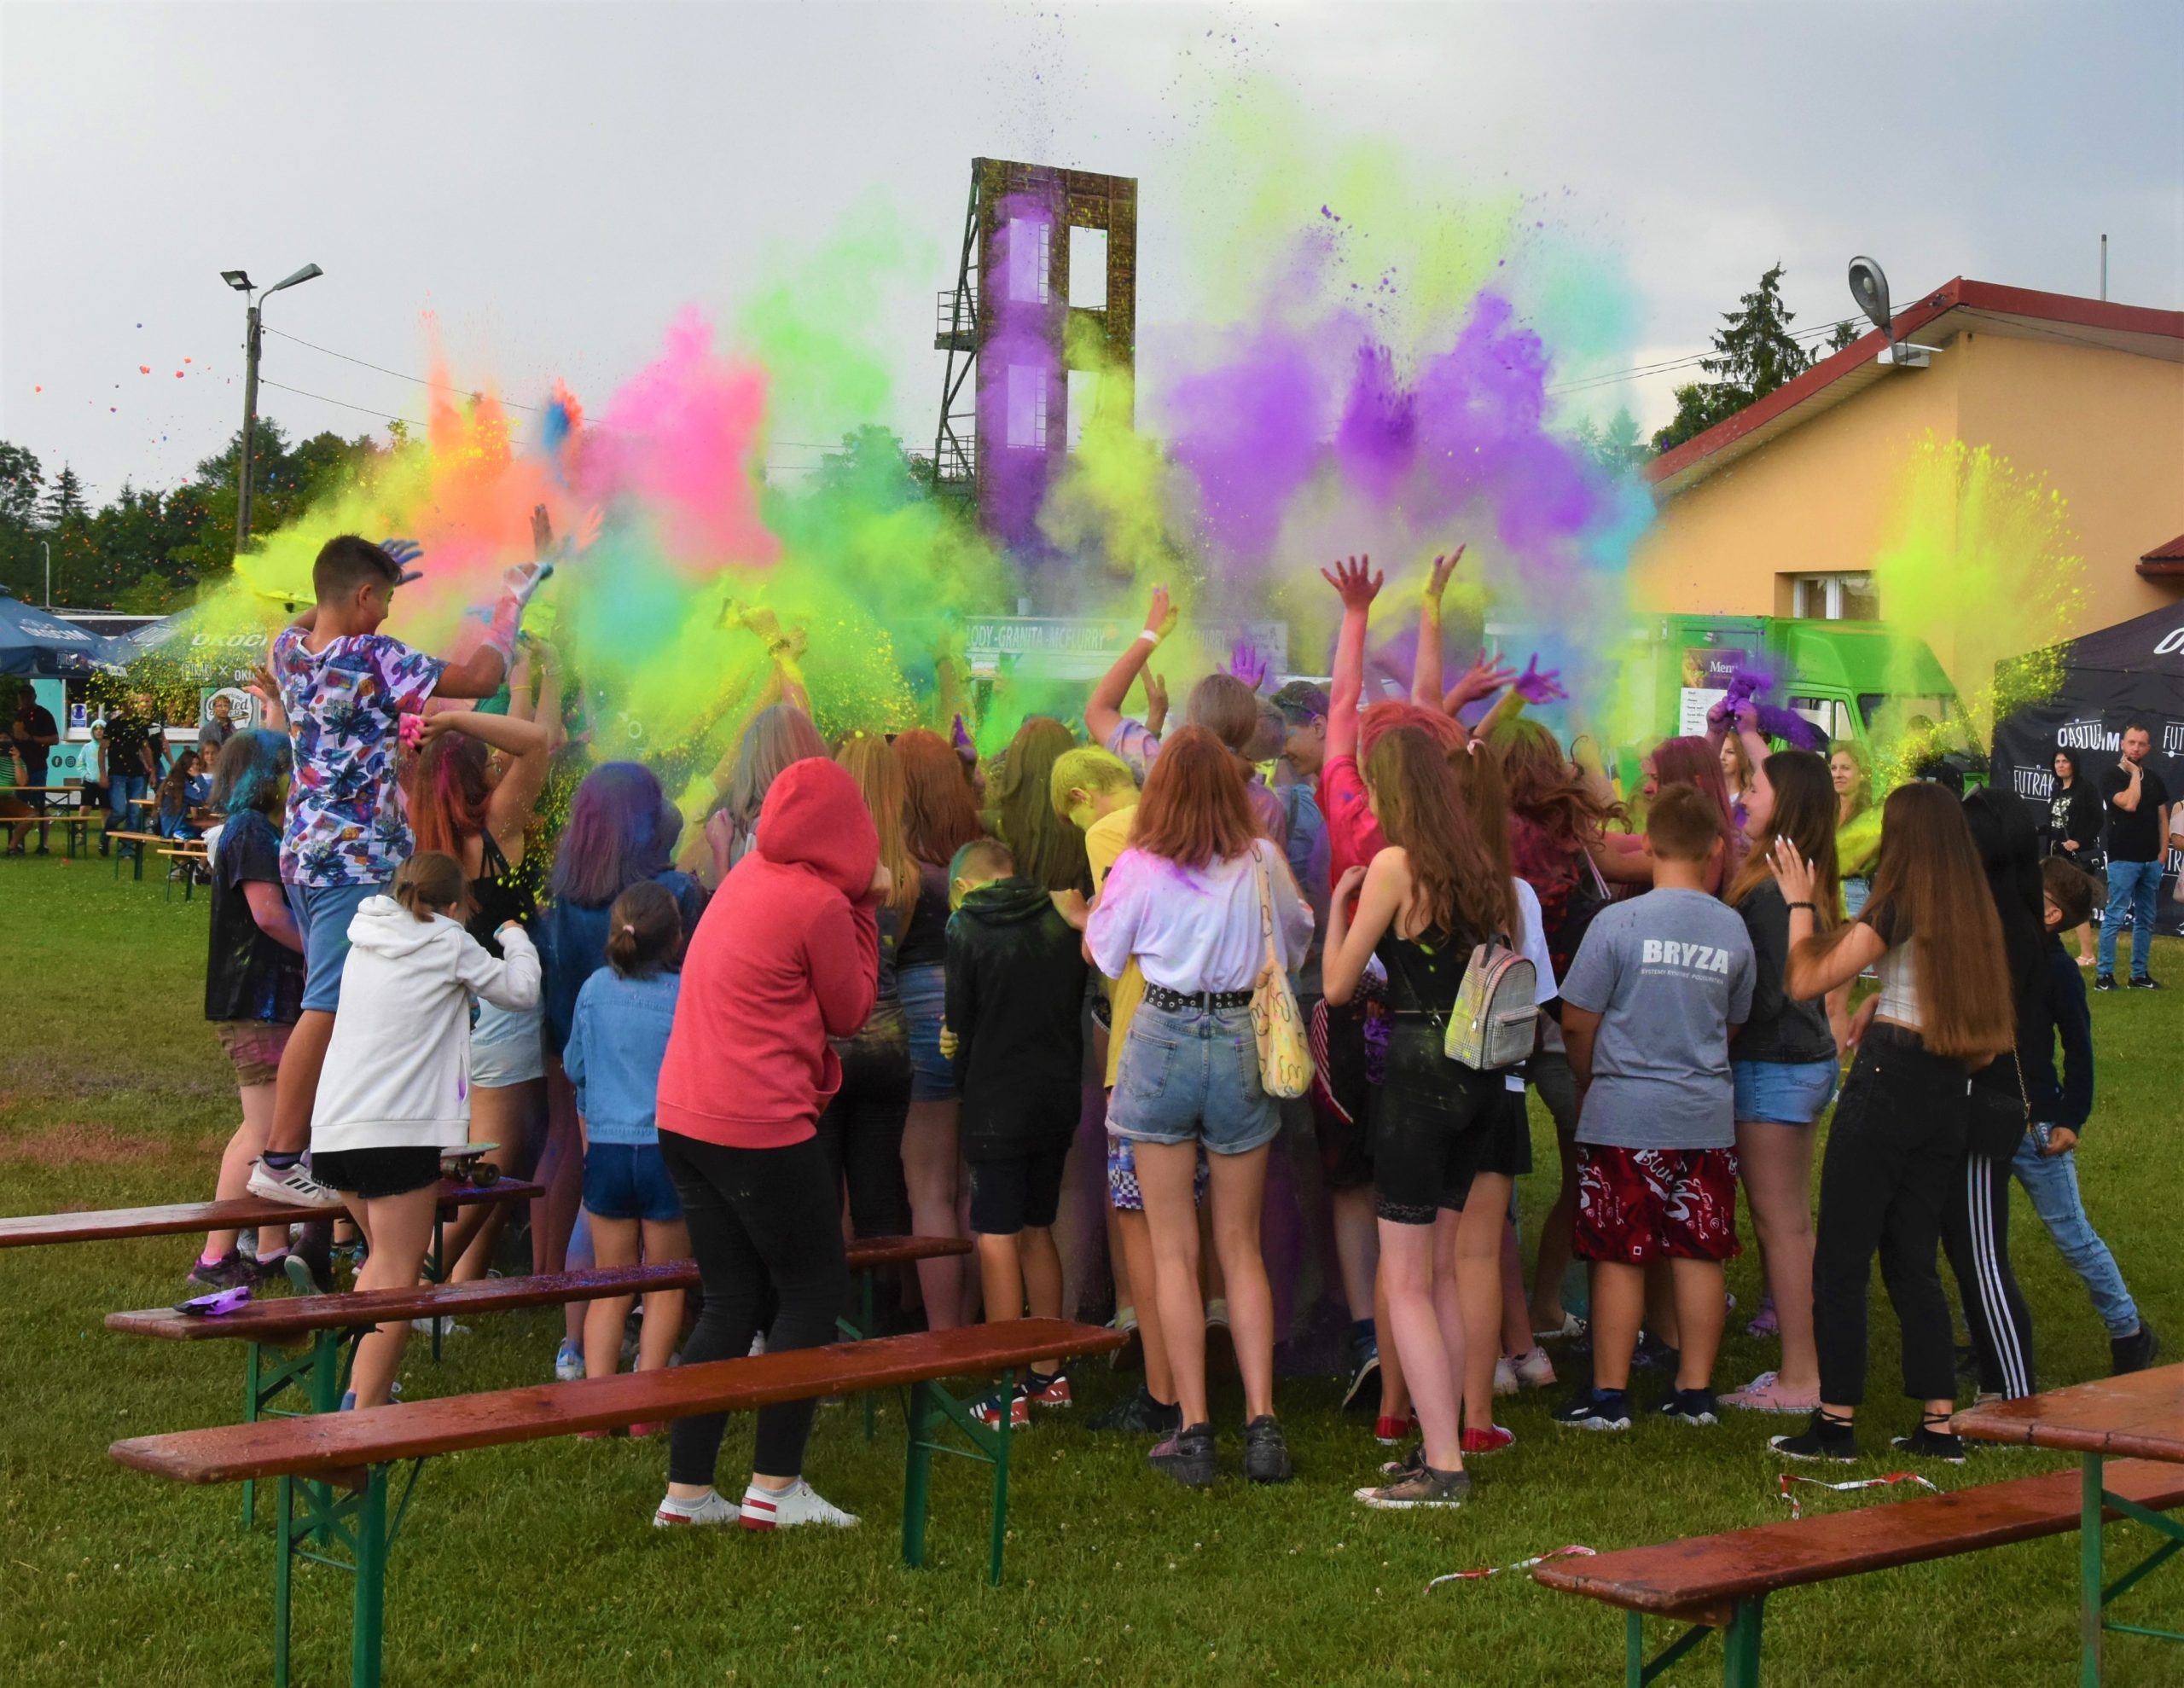 Ciasno stłoczona grupa młodych osób, wyrzucająca w powietrze kolorowe proszki.